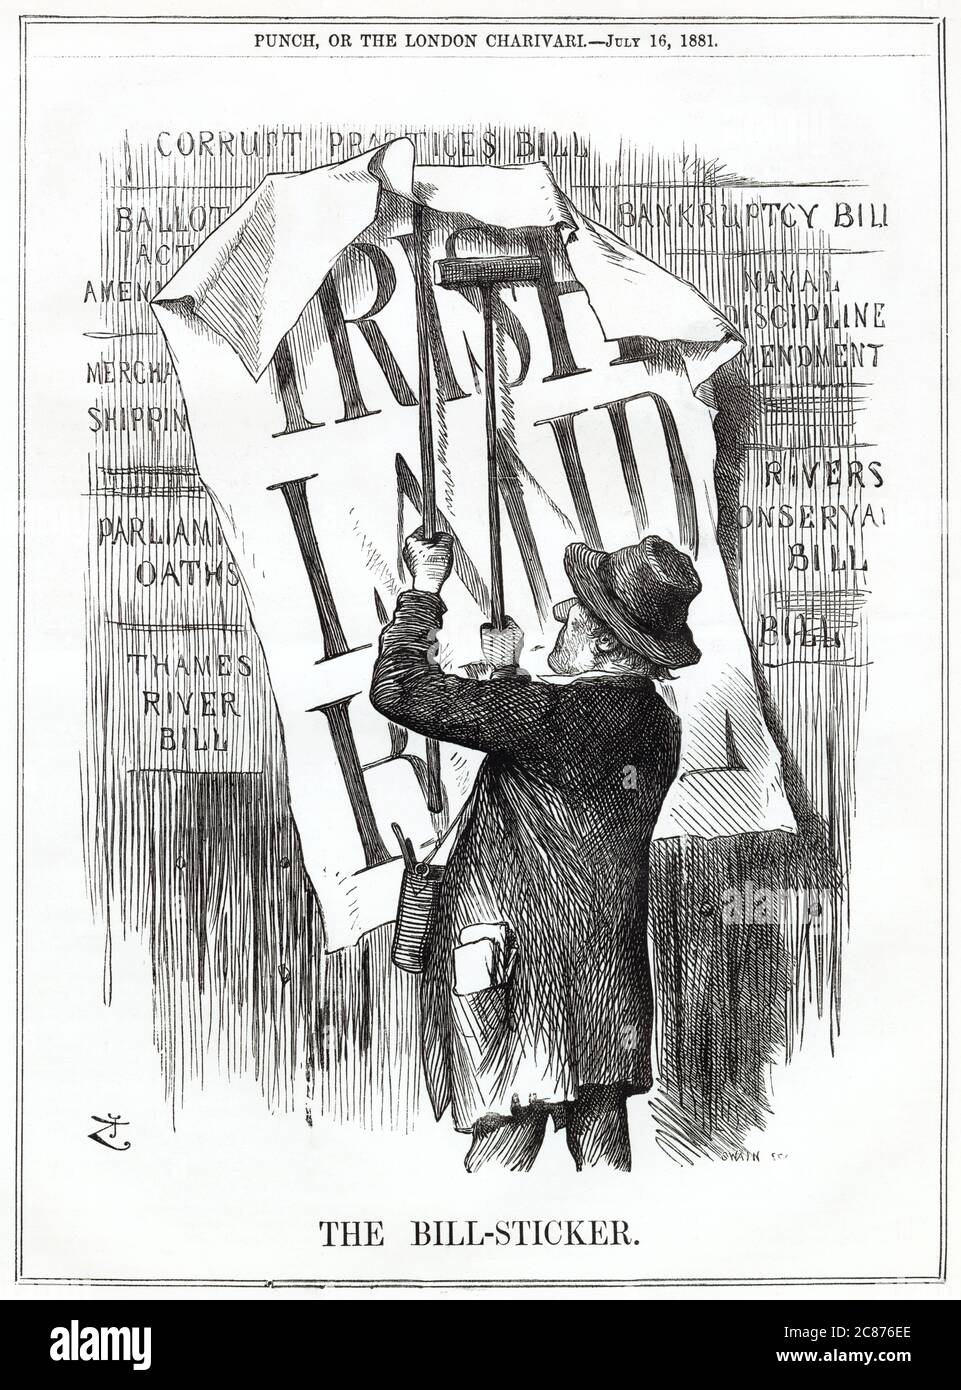 Cartoon, The Bill-Sticker -- un commentaire satirique sur Gladstone en tant que Premier ministre libéral, choisissant de donner la priorité au projet de loi sur les terres irlandaises par rapport à d'autres projets de loi. Banque D'Images